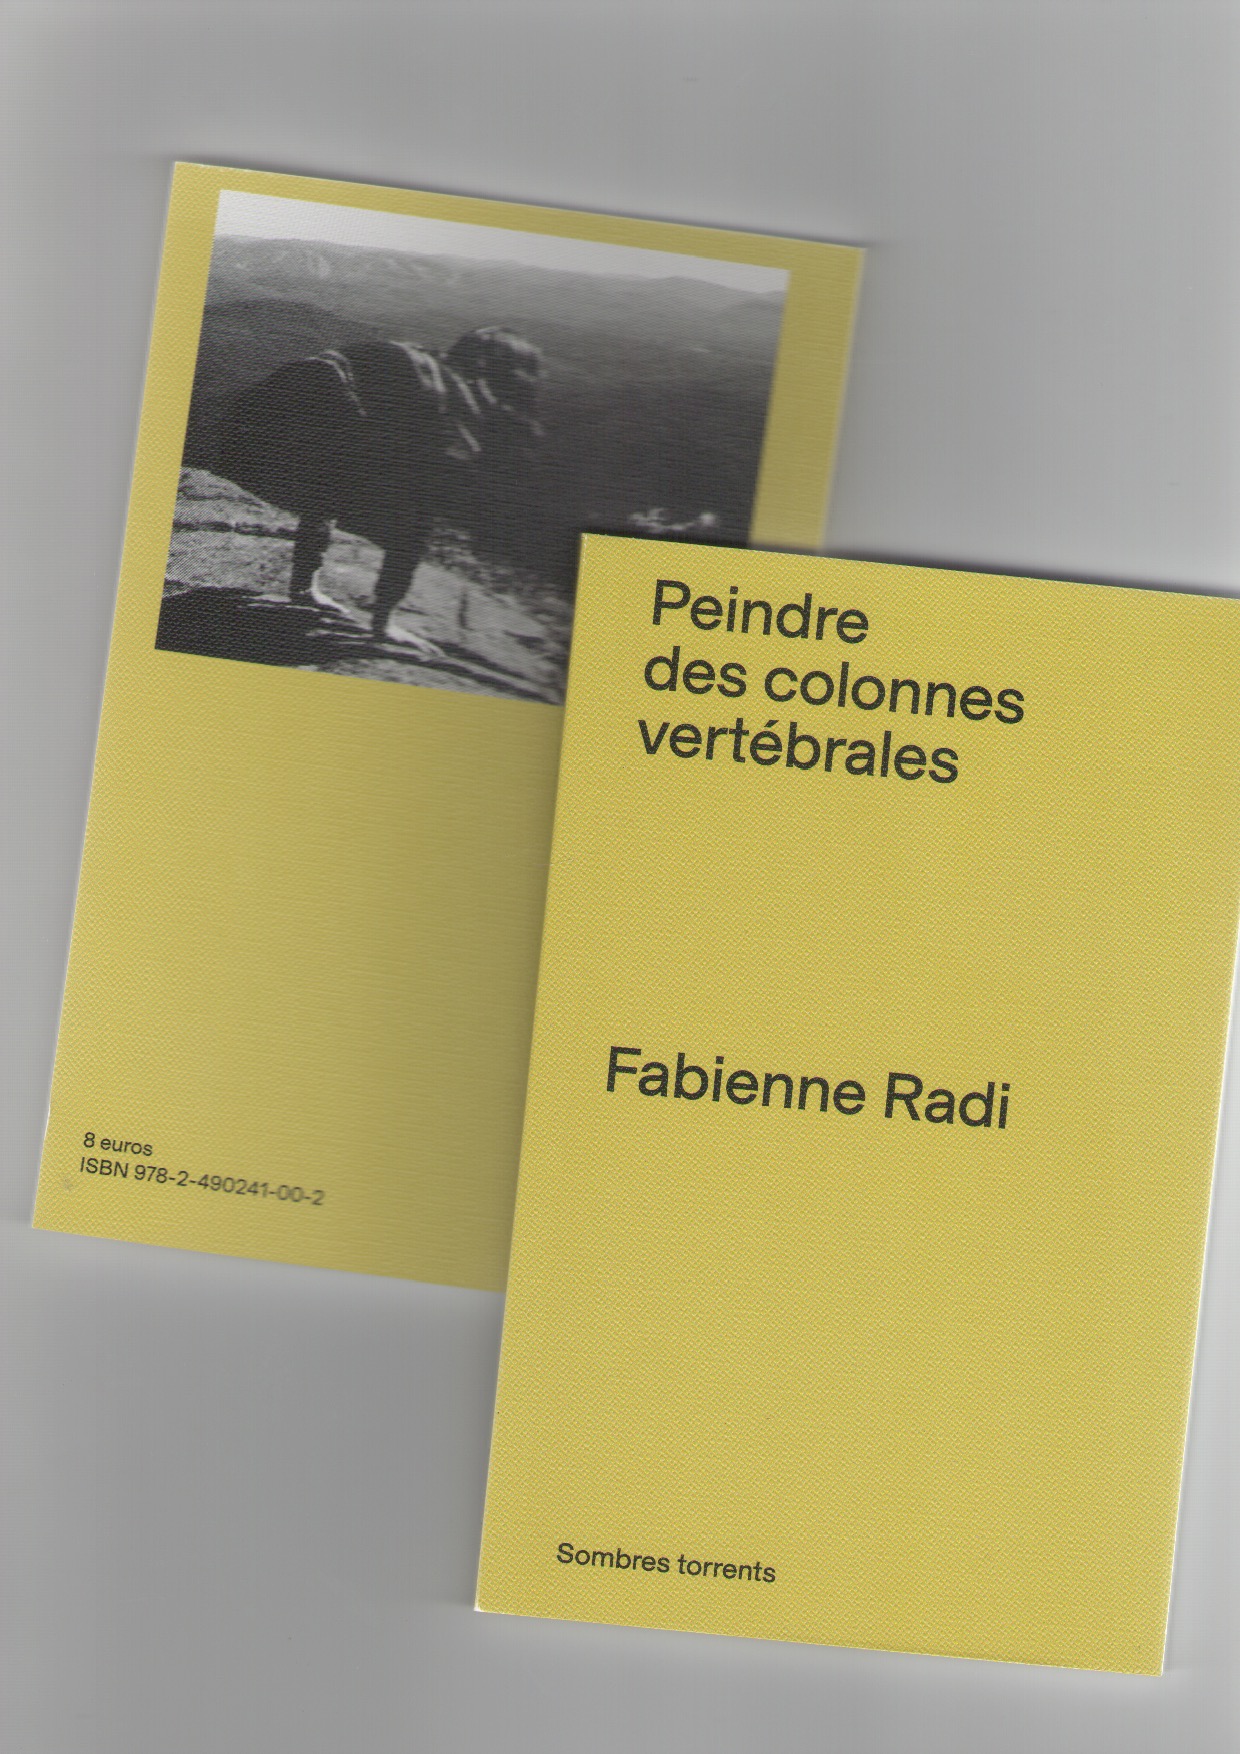 RADI, Fabienne - Peindre des colonnes vertébrales